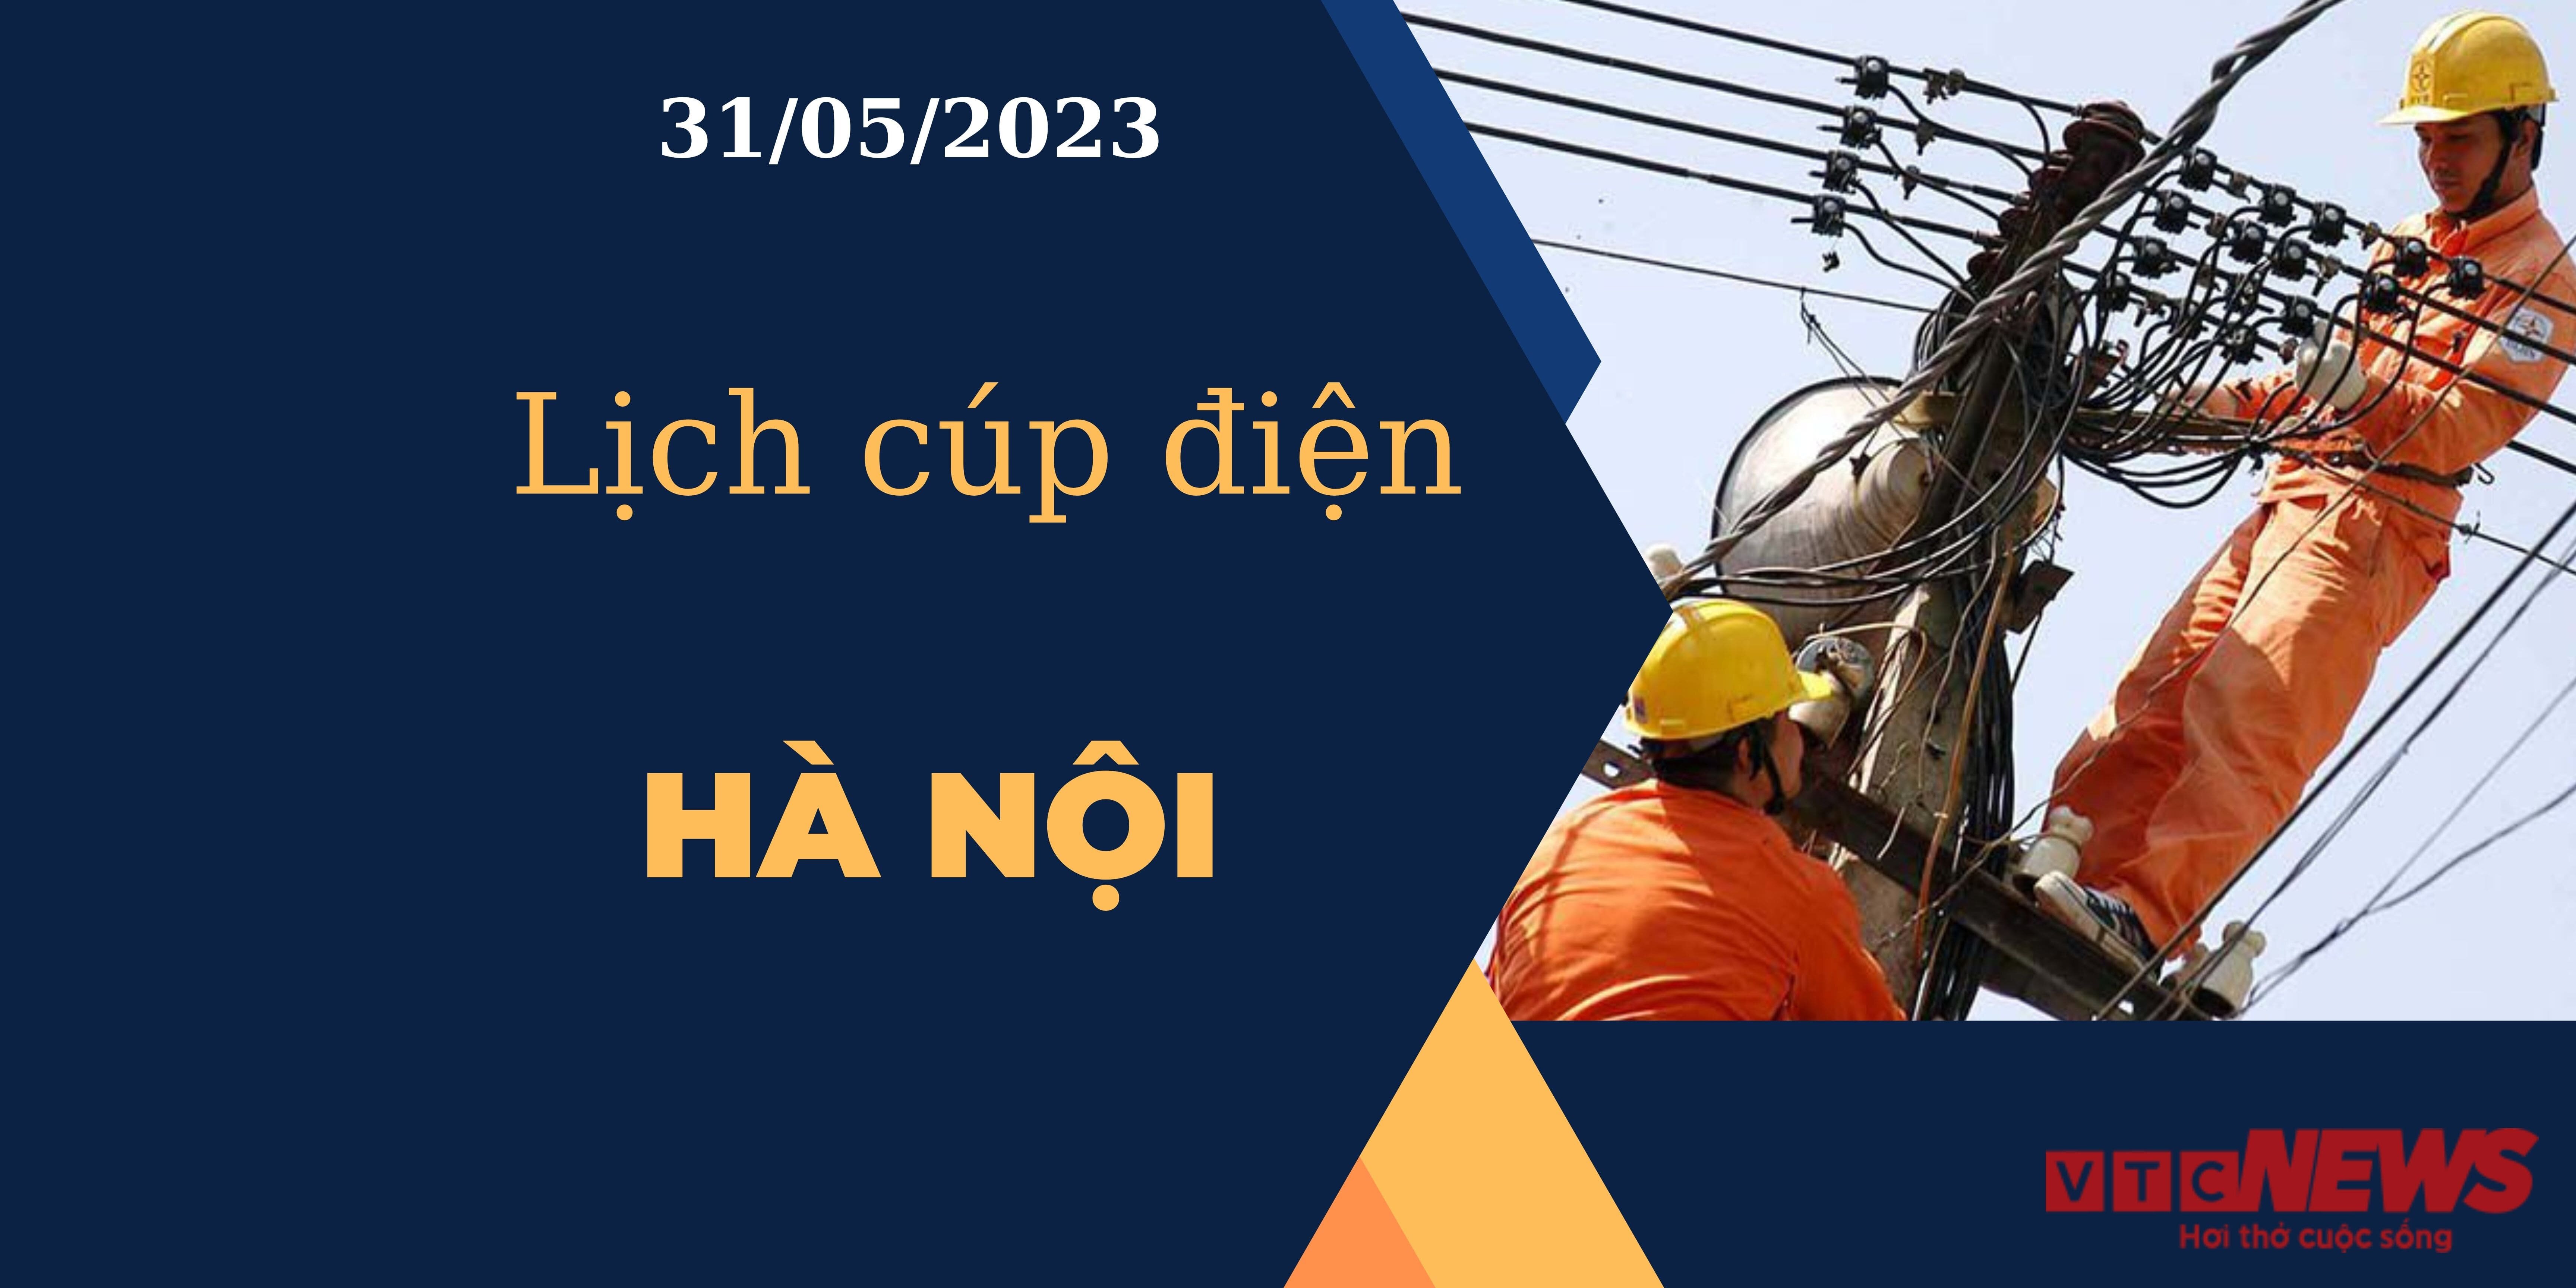 Lịch cúp điện hôm nay tại Hà Nội ngày 31/05/2023 - 1